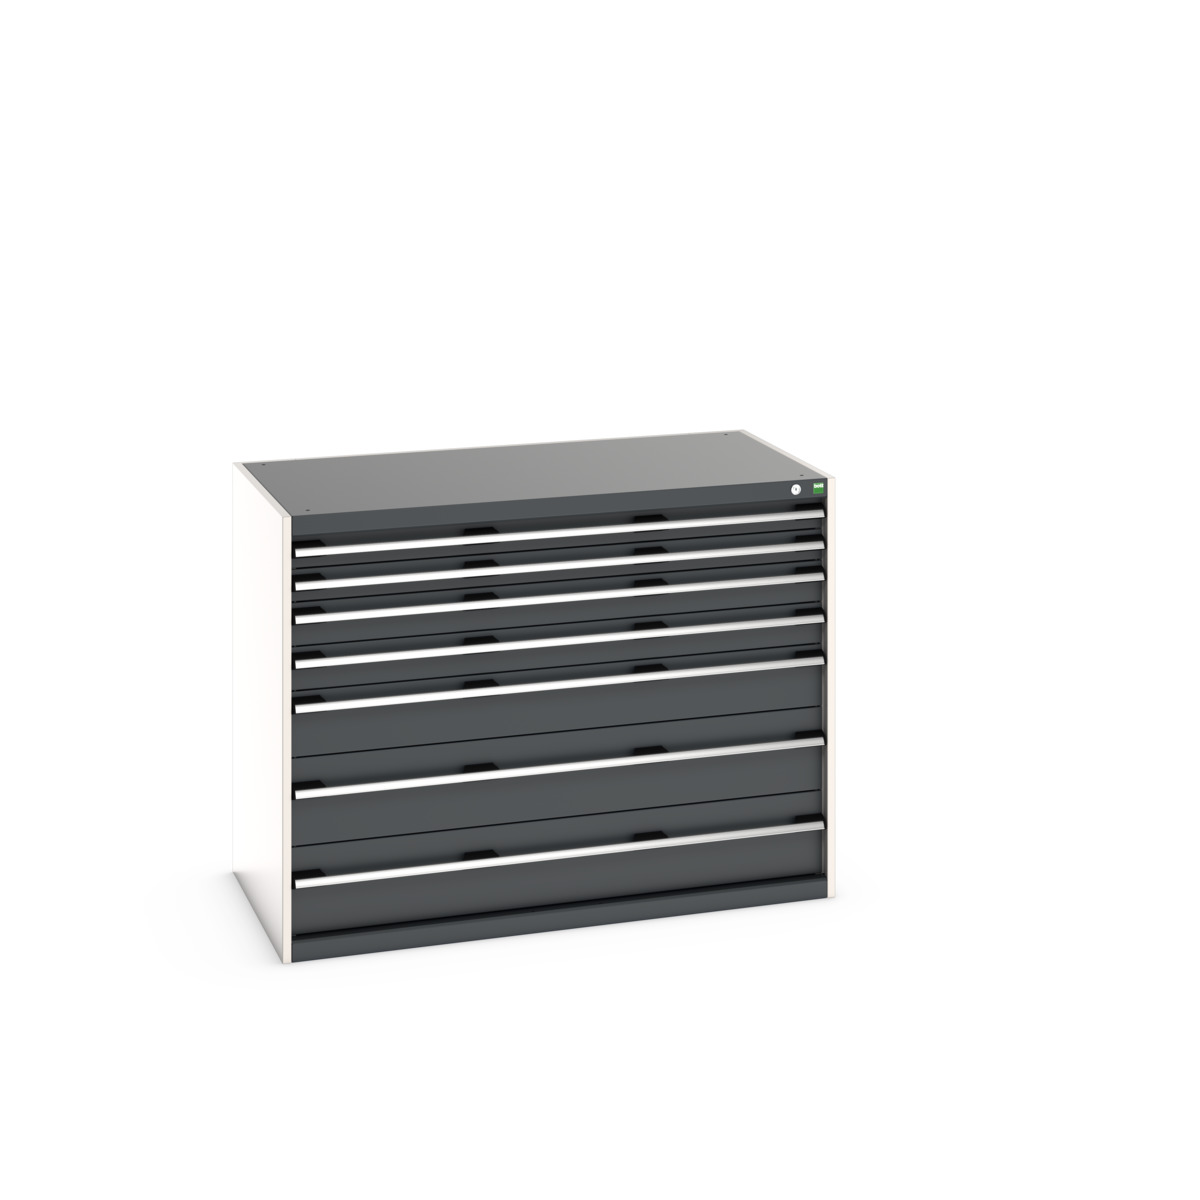 40030015.19V - cubio drawer cabinet